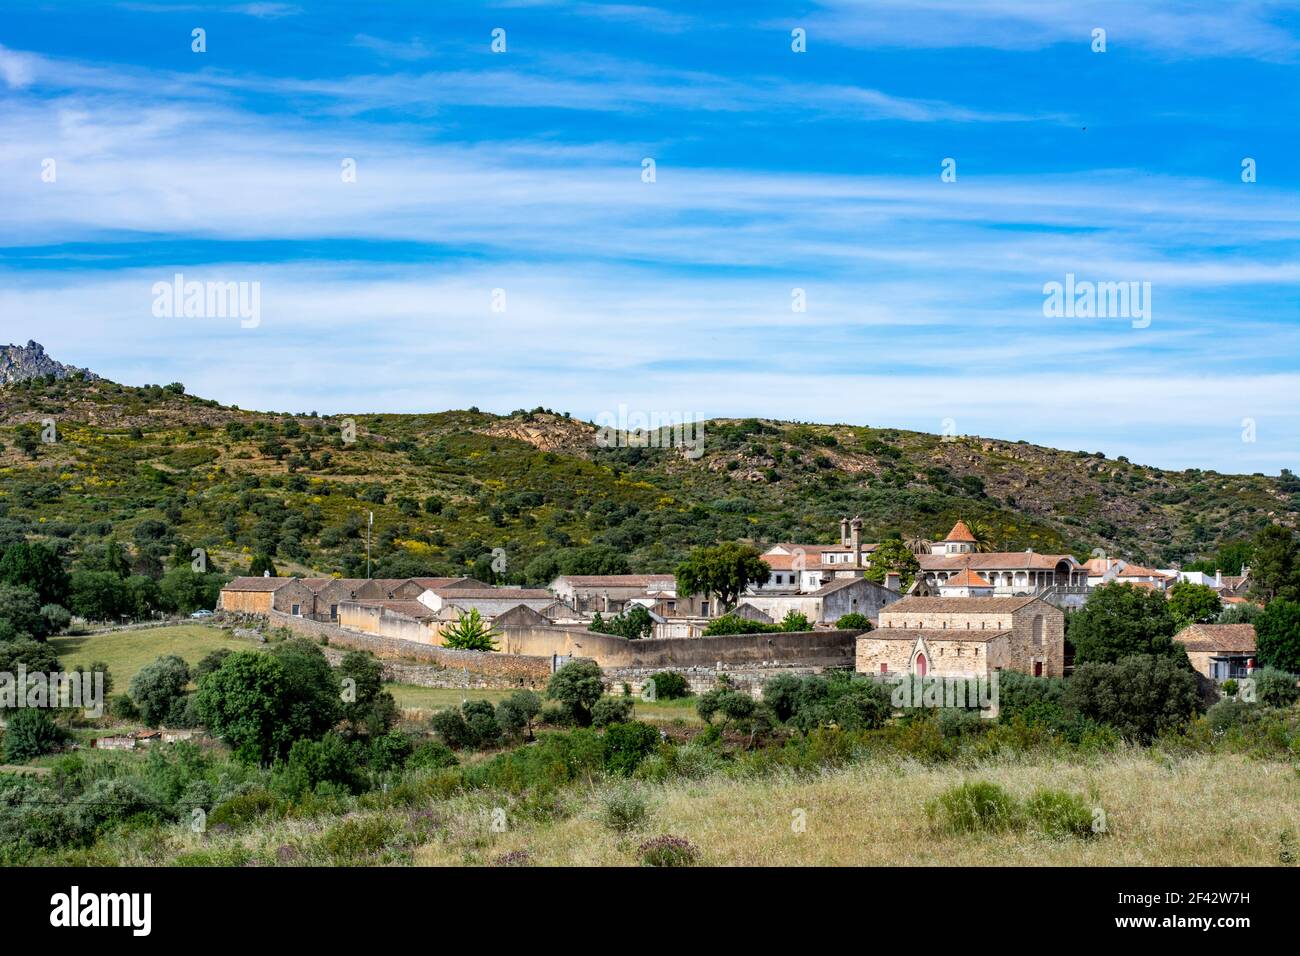 Vista panoramica del villaggio storico di Idanha a Velha In Portogallo Foto Stock